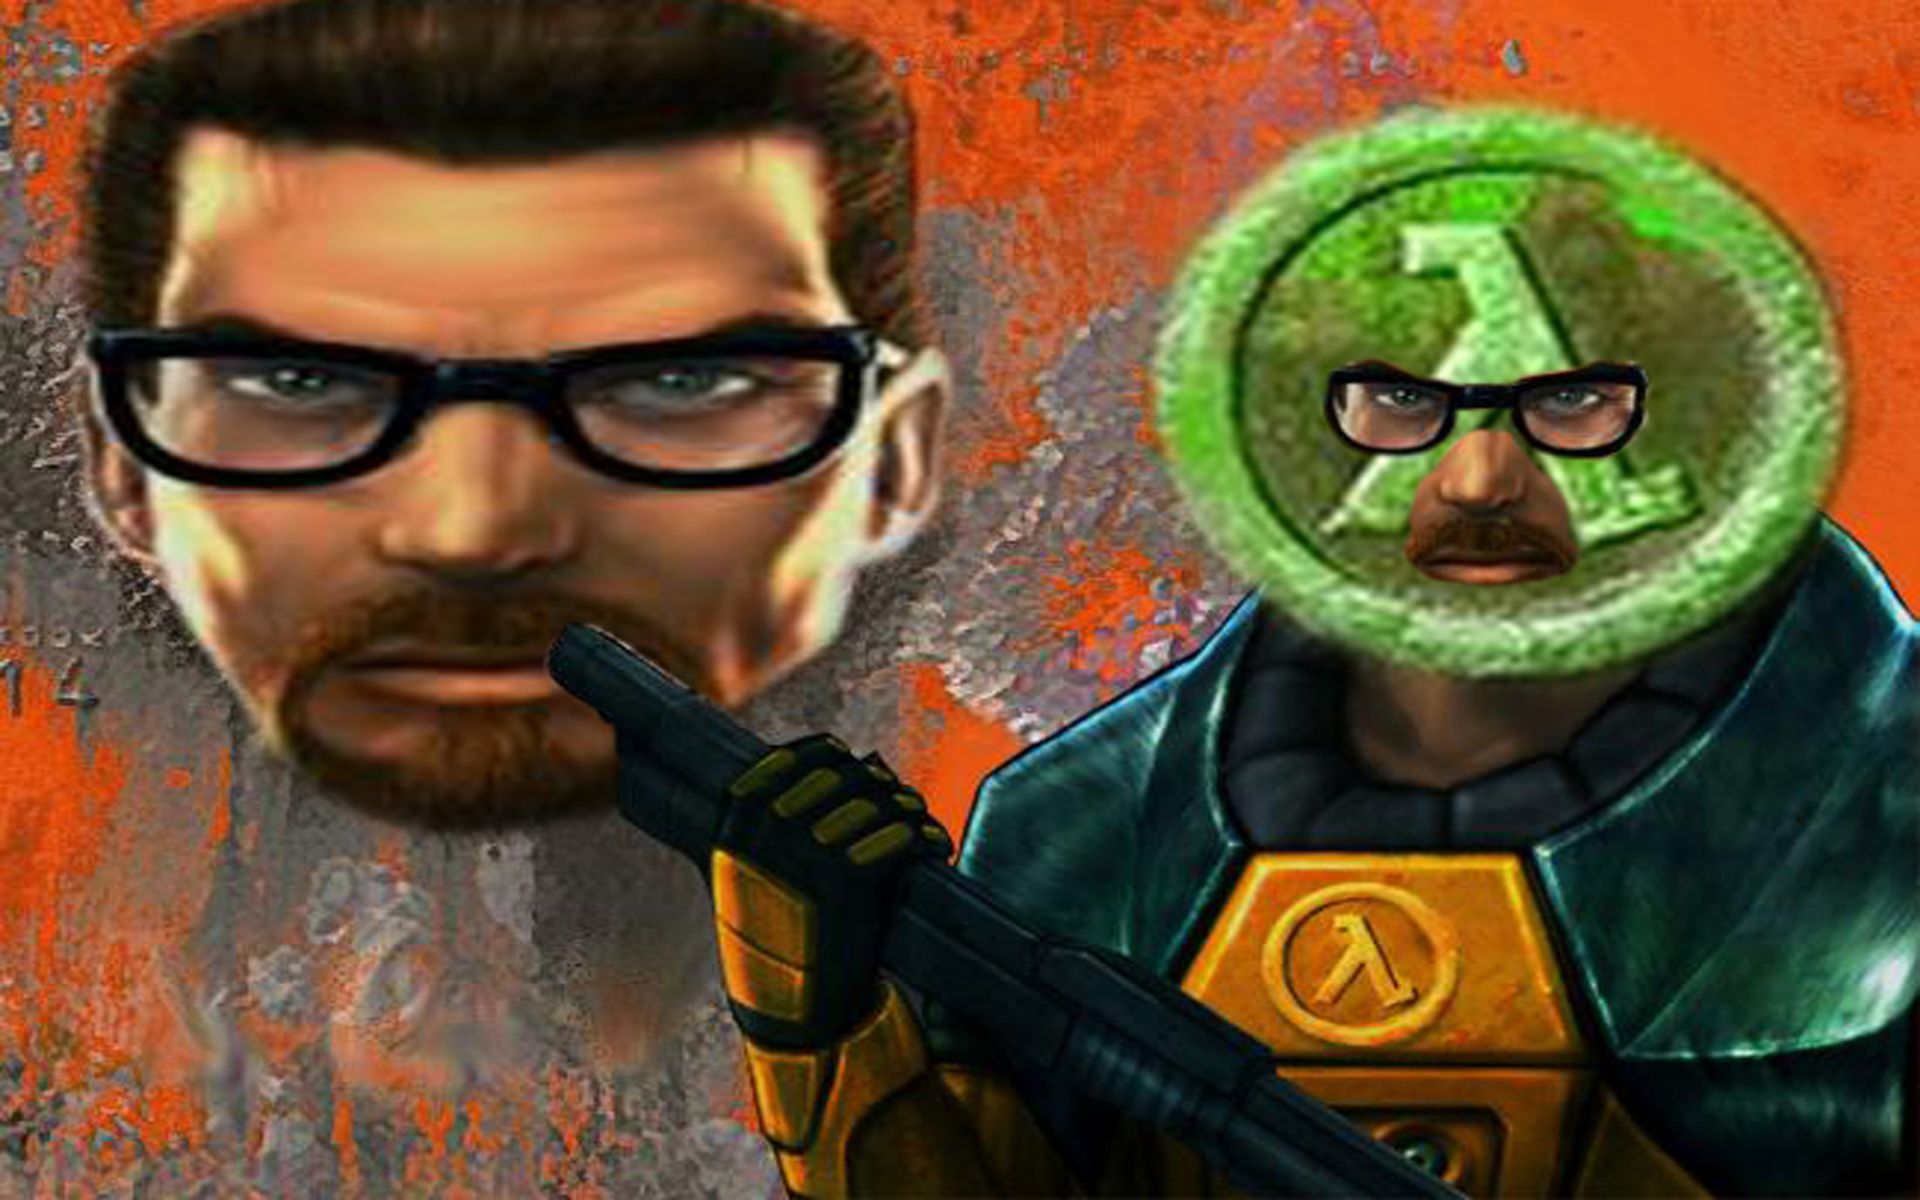 半条命2(Half-Life 2) - 游戏图片 | 图片下载 | 游戏壁纸 - VeryCD电驴大全